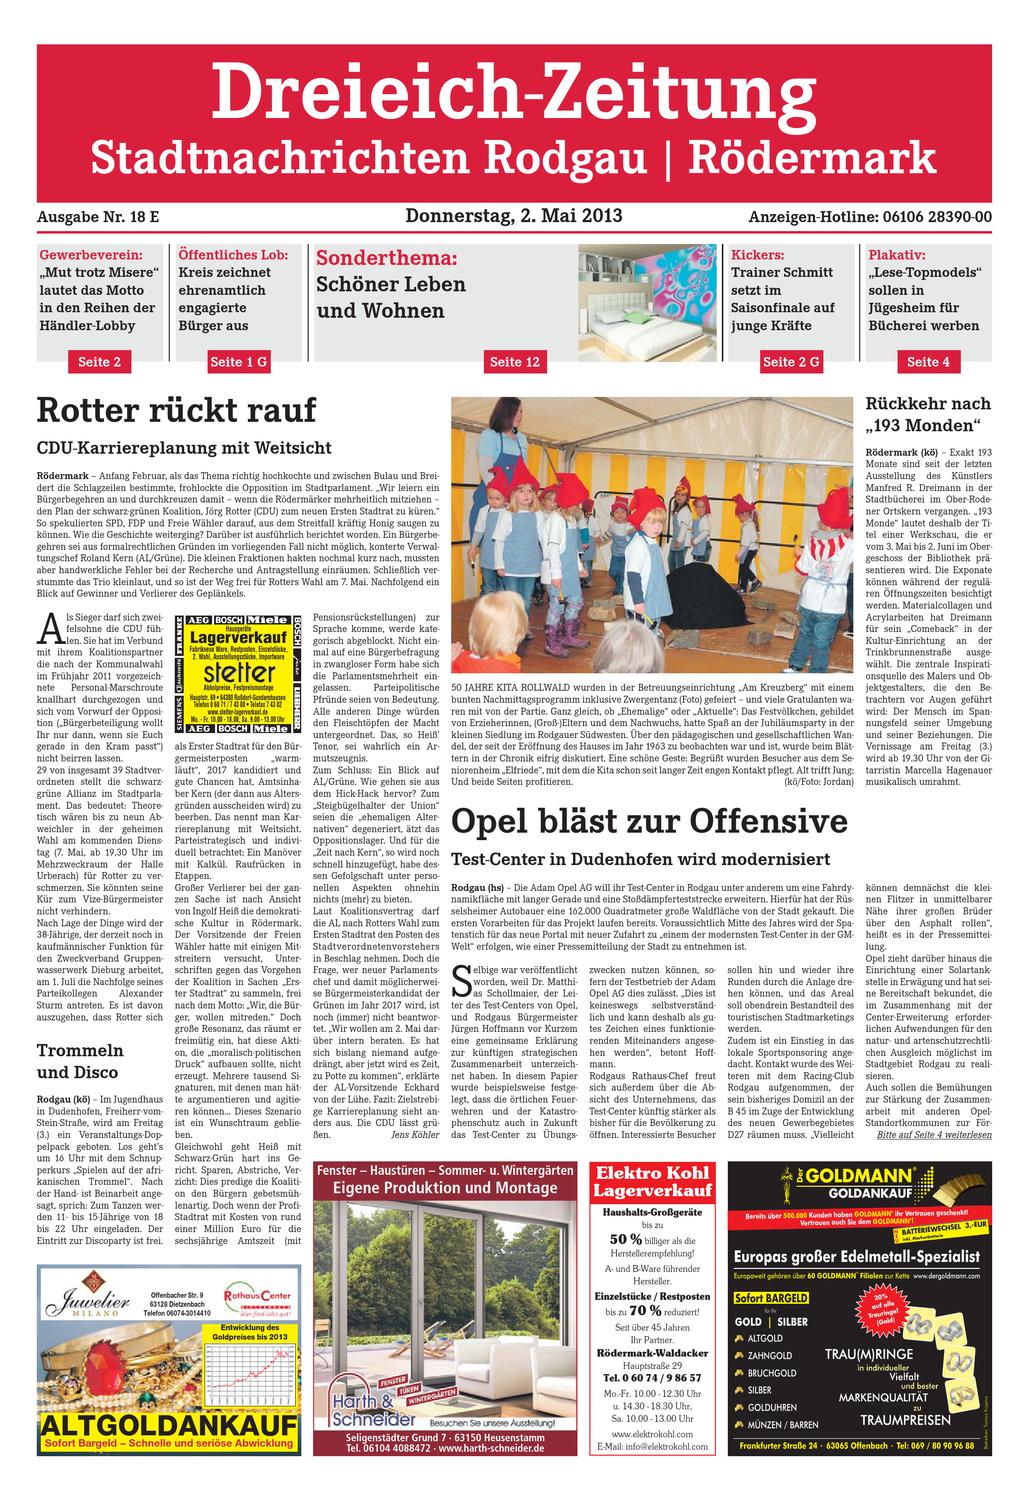 Schönes Aus Holz Selber Machen Schön Dz Line 018 13 E by Dreieich Zeitung Fenbach Journal issuu